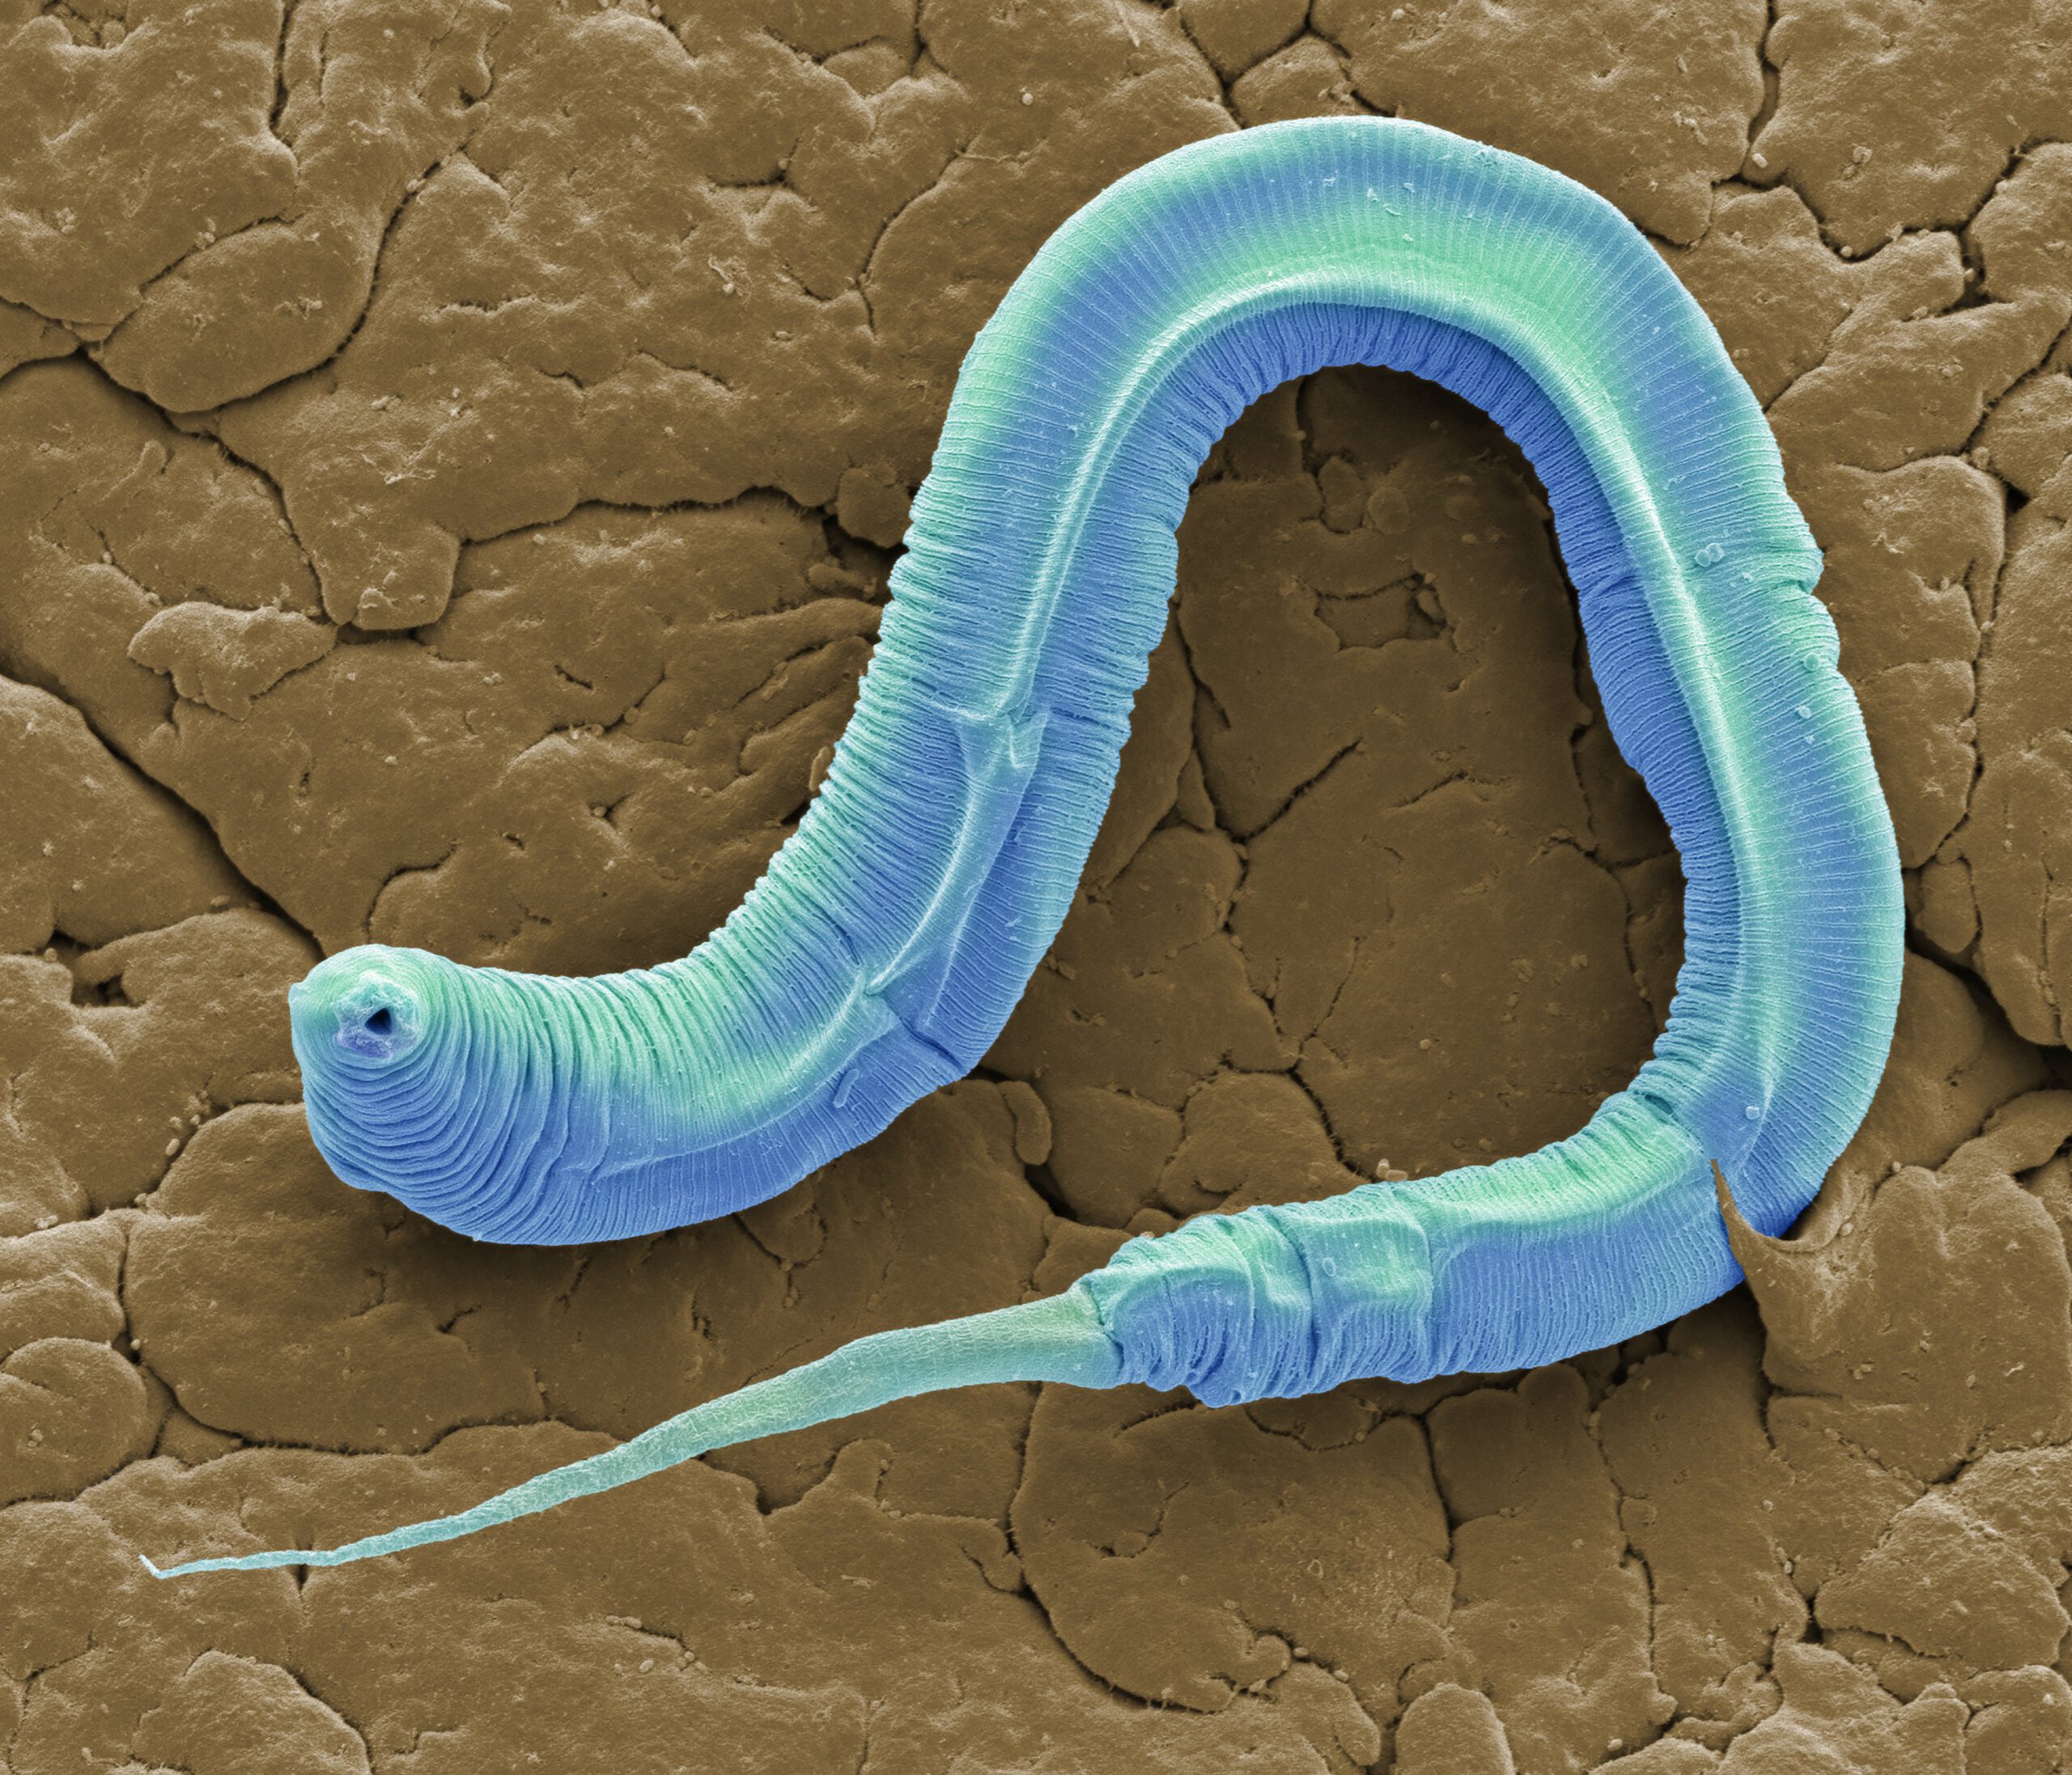 a microscopic nematode of the species C. elegans 